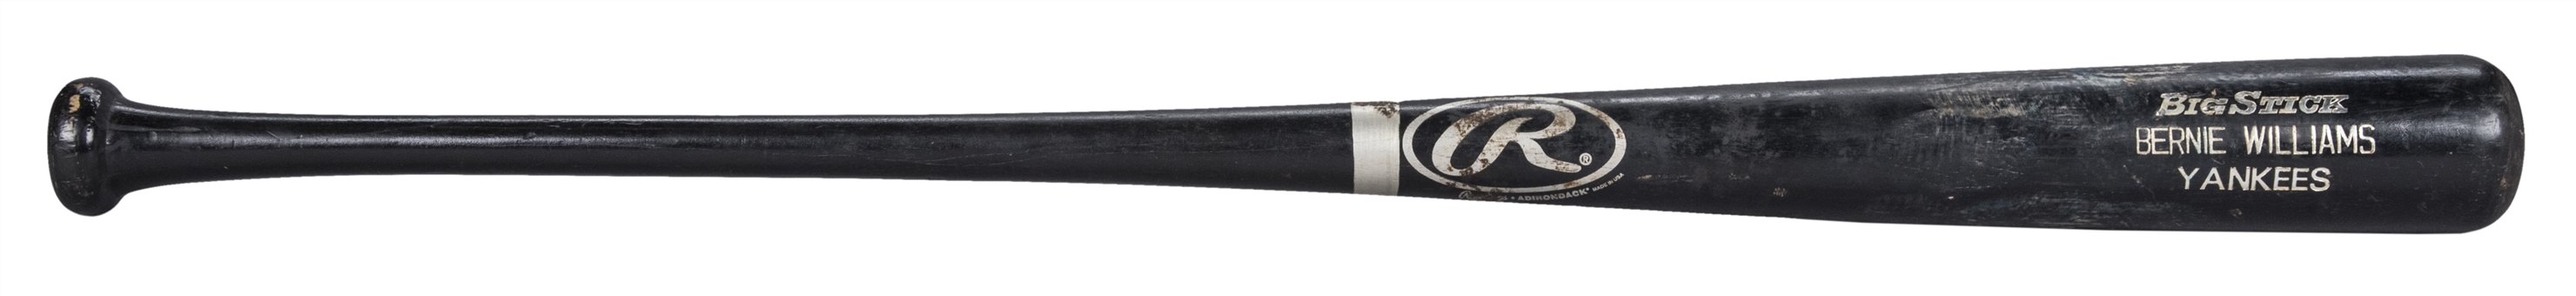 2002 Bernie Williams Yankees Game Used Rawlings MDW20 Model Bat (PSA/DNA GU 9)